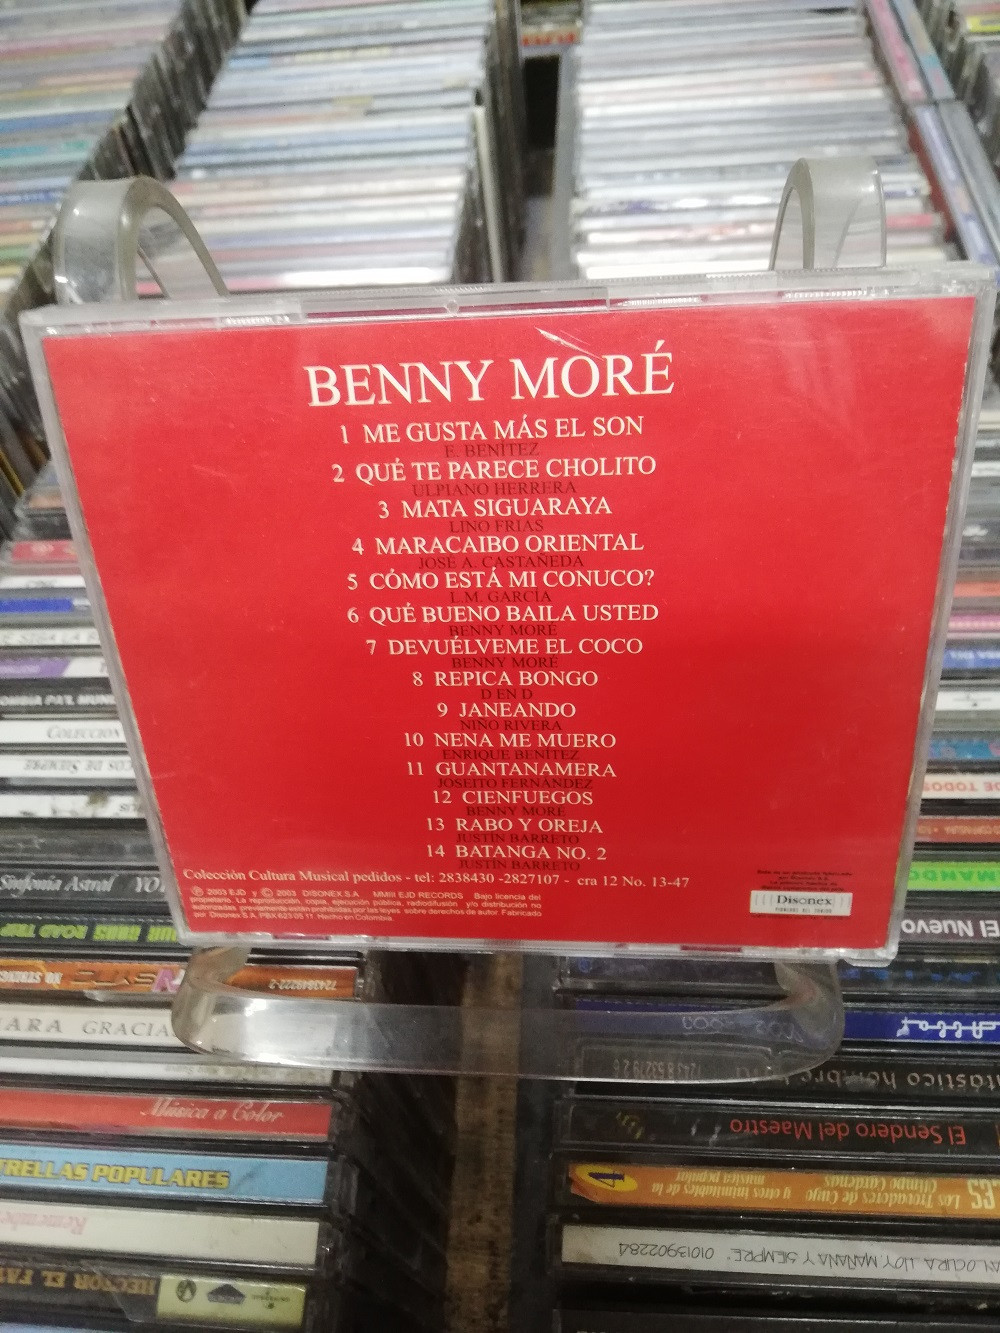 Imagen CD BENNY MORÉ - QUE BUENO BAILA USTED 2